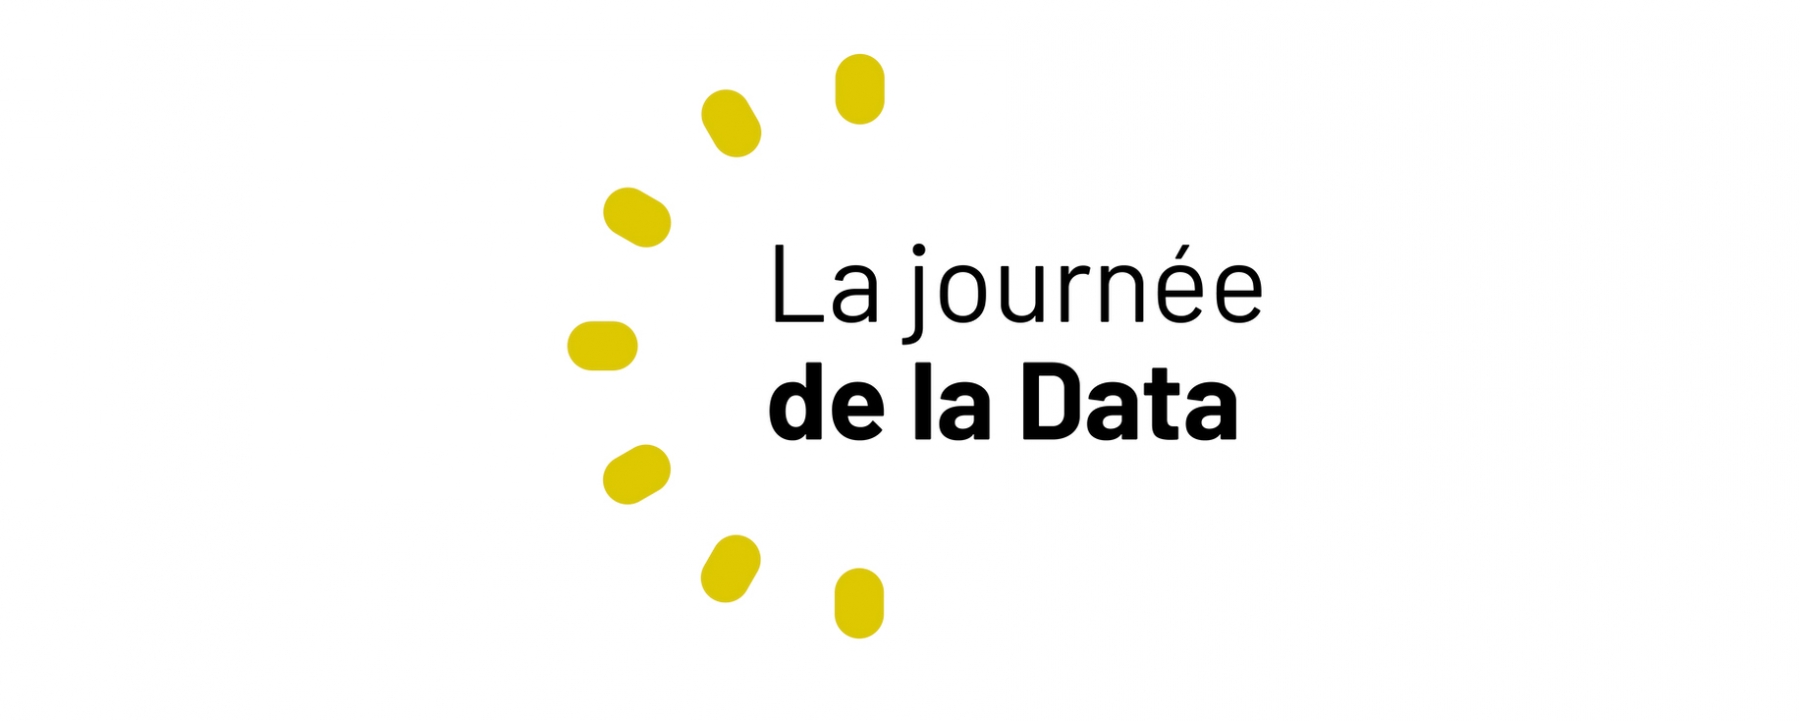 La journée de la Data, organisée par NetMedia Group le 25 novembreDR